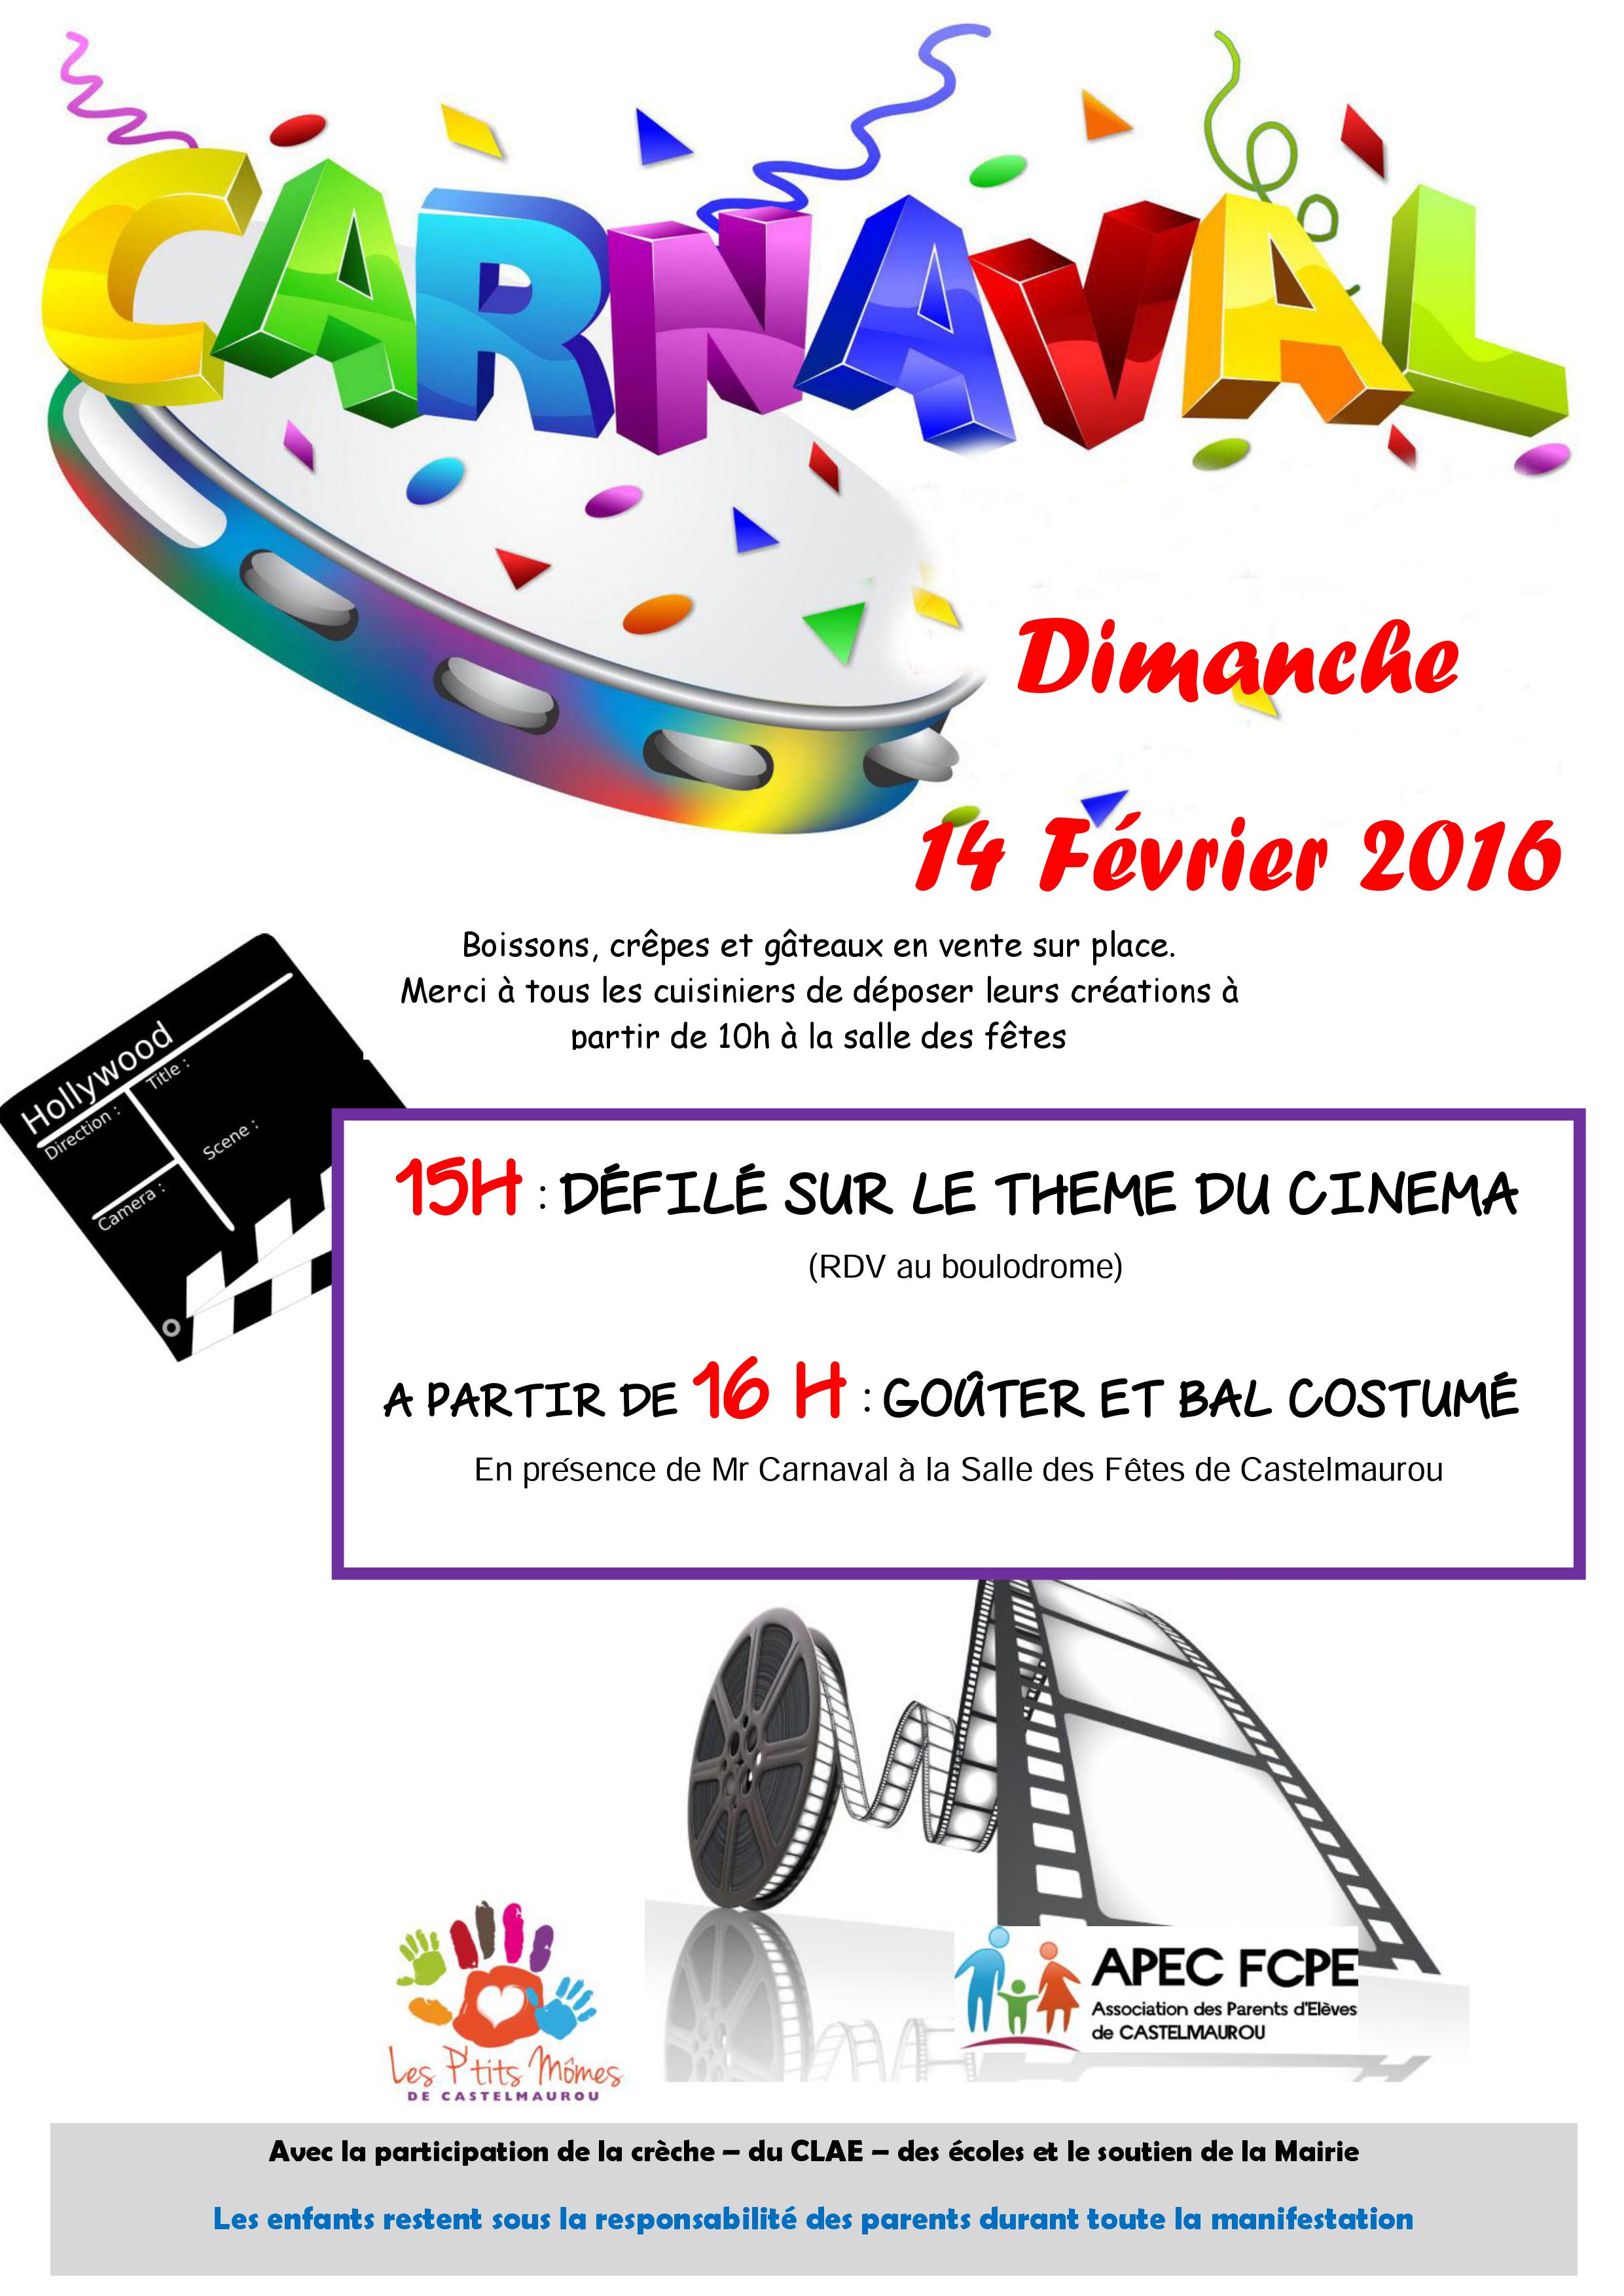 Carnaval – Association des Parents d'Elèves de Castelmaurou